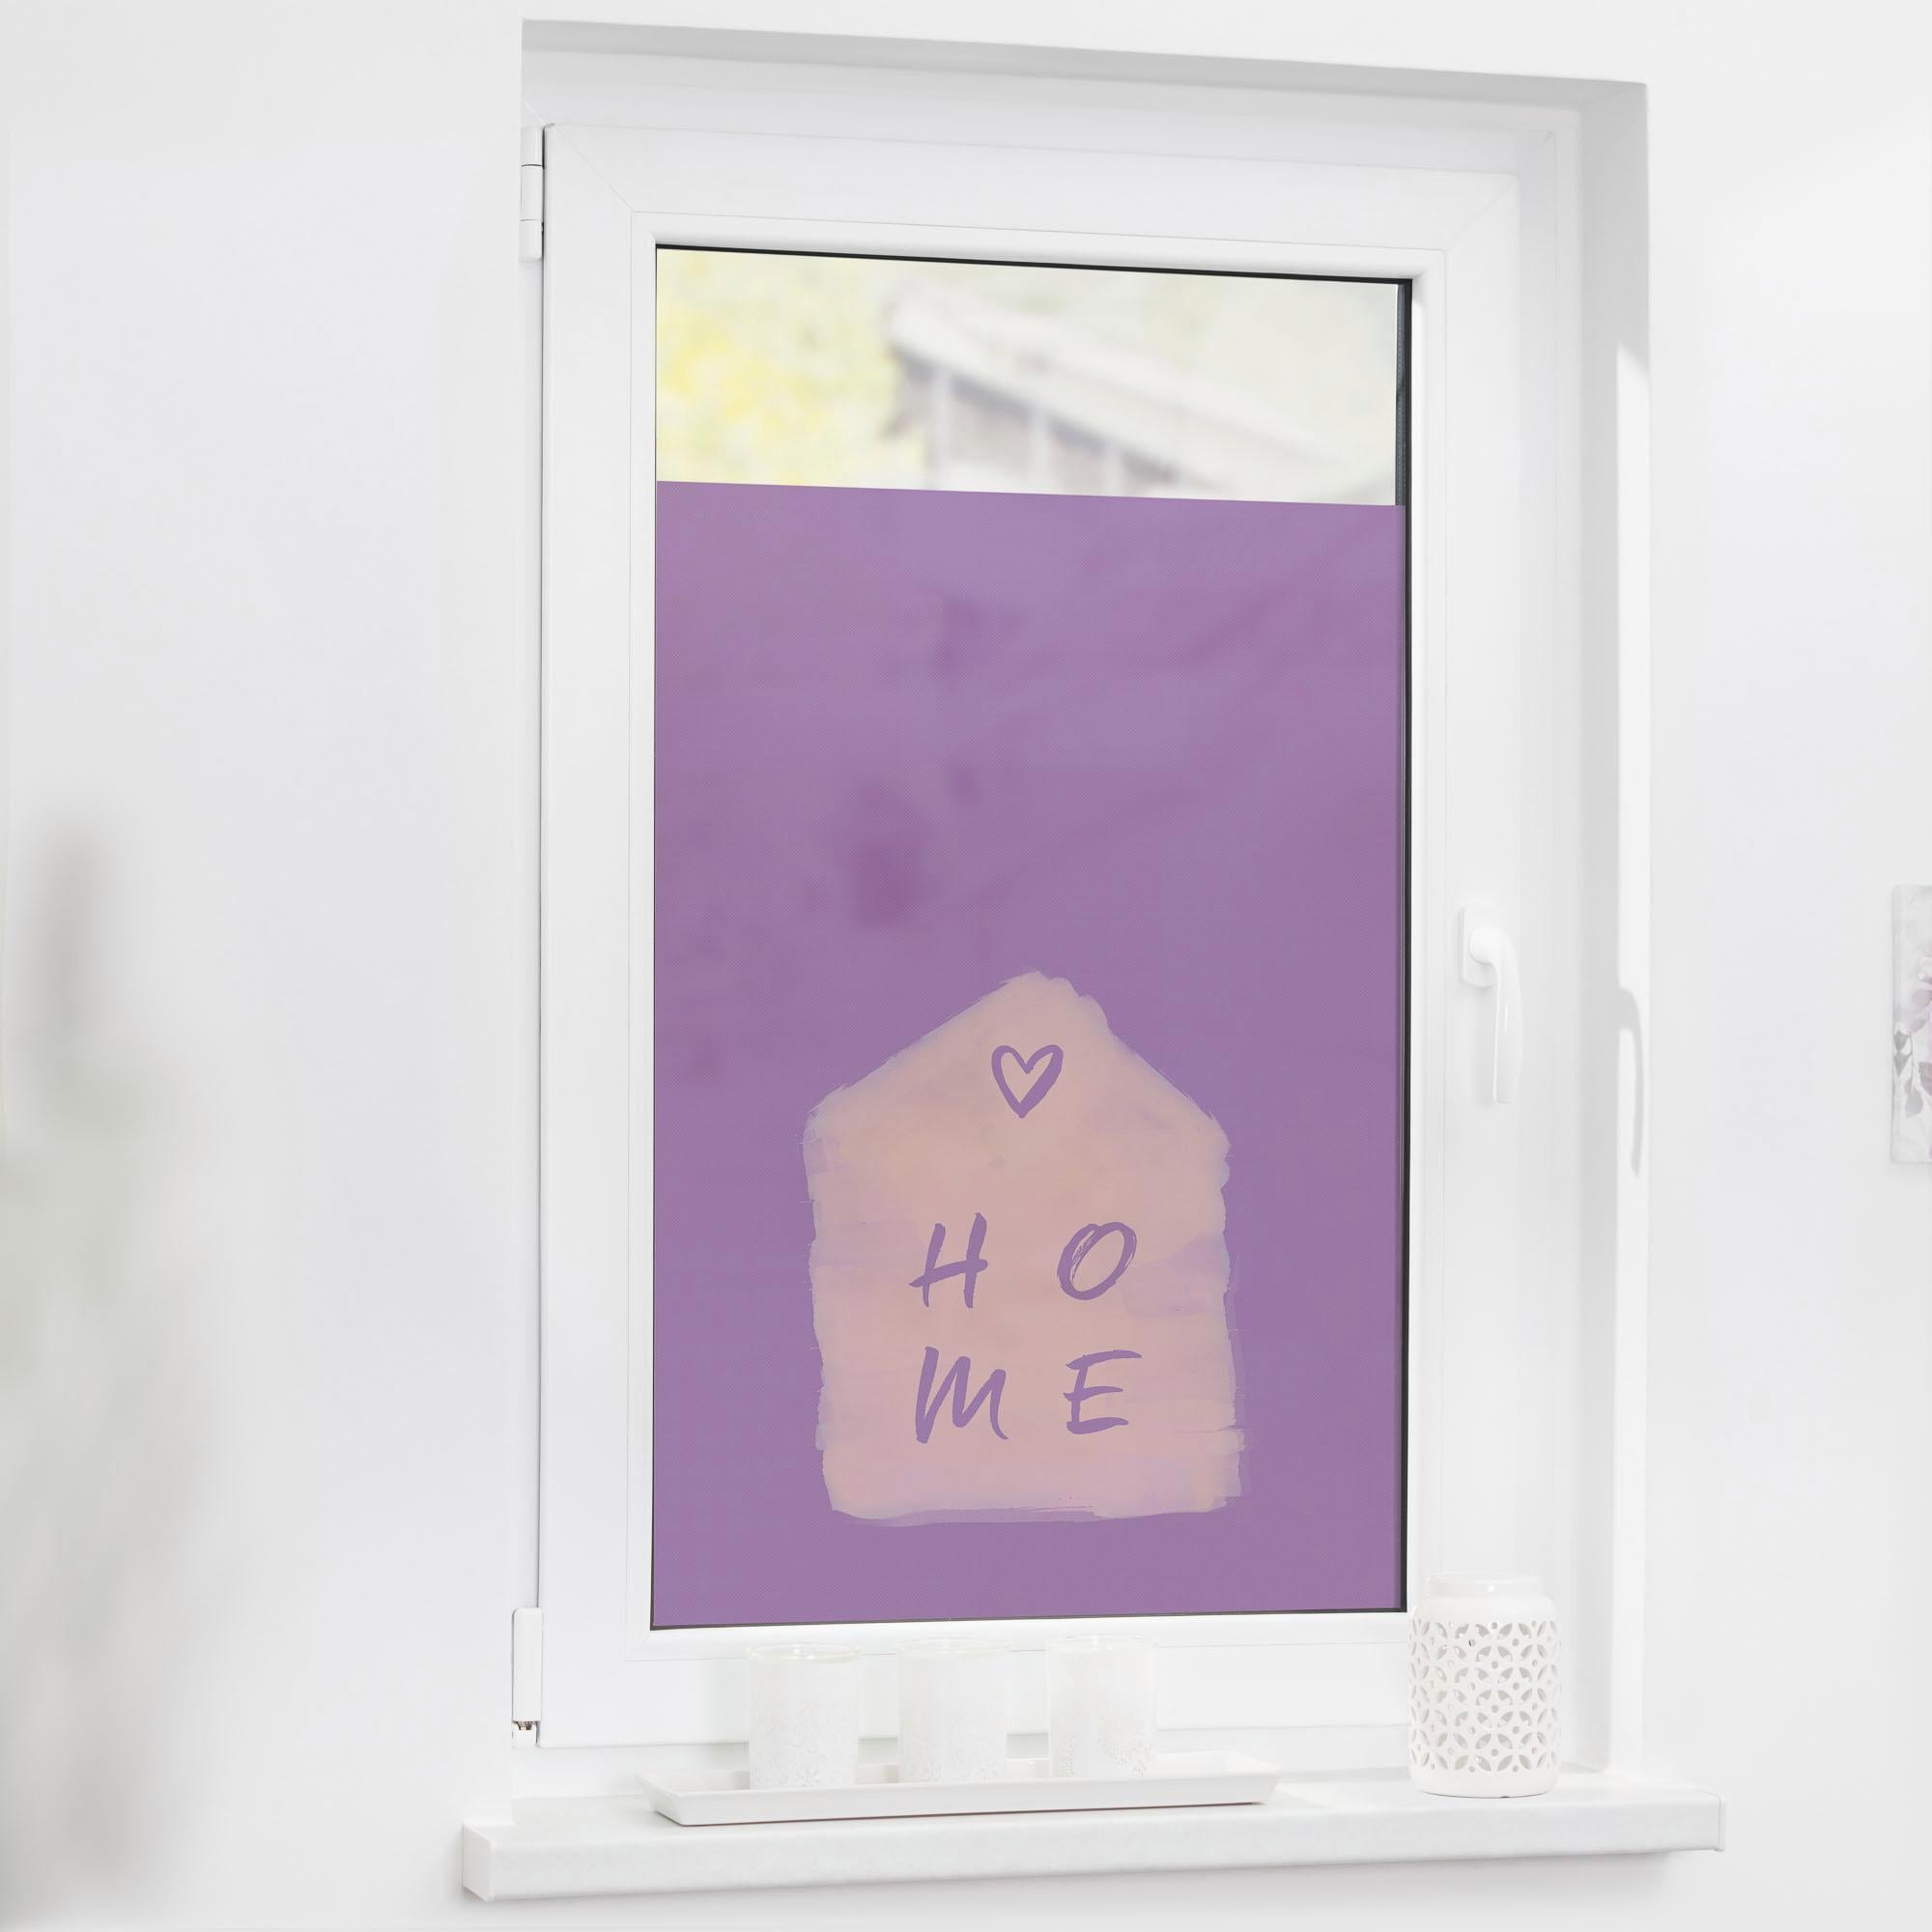 LICHTBLICK ORIGINAL Fensterfolie »Home«, Rechnung auf strukturiertKlebepunkte, 1 St., blickdicht, Sichtschutz kaufen selbstklebend